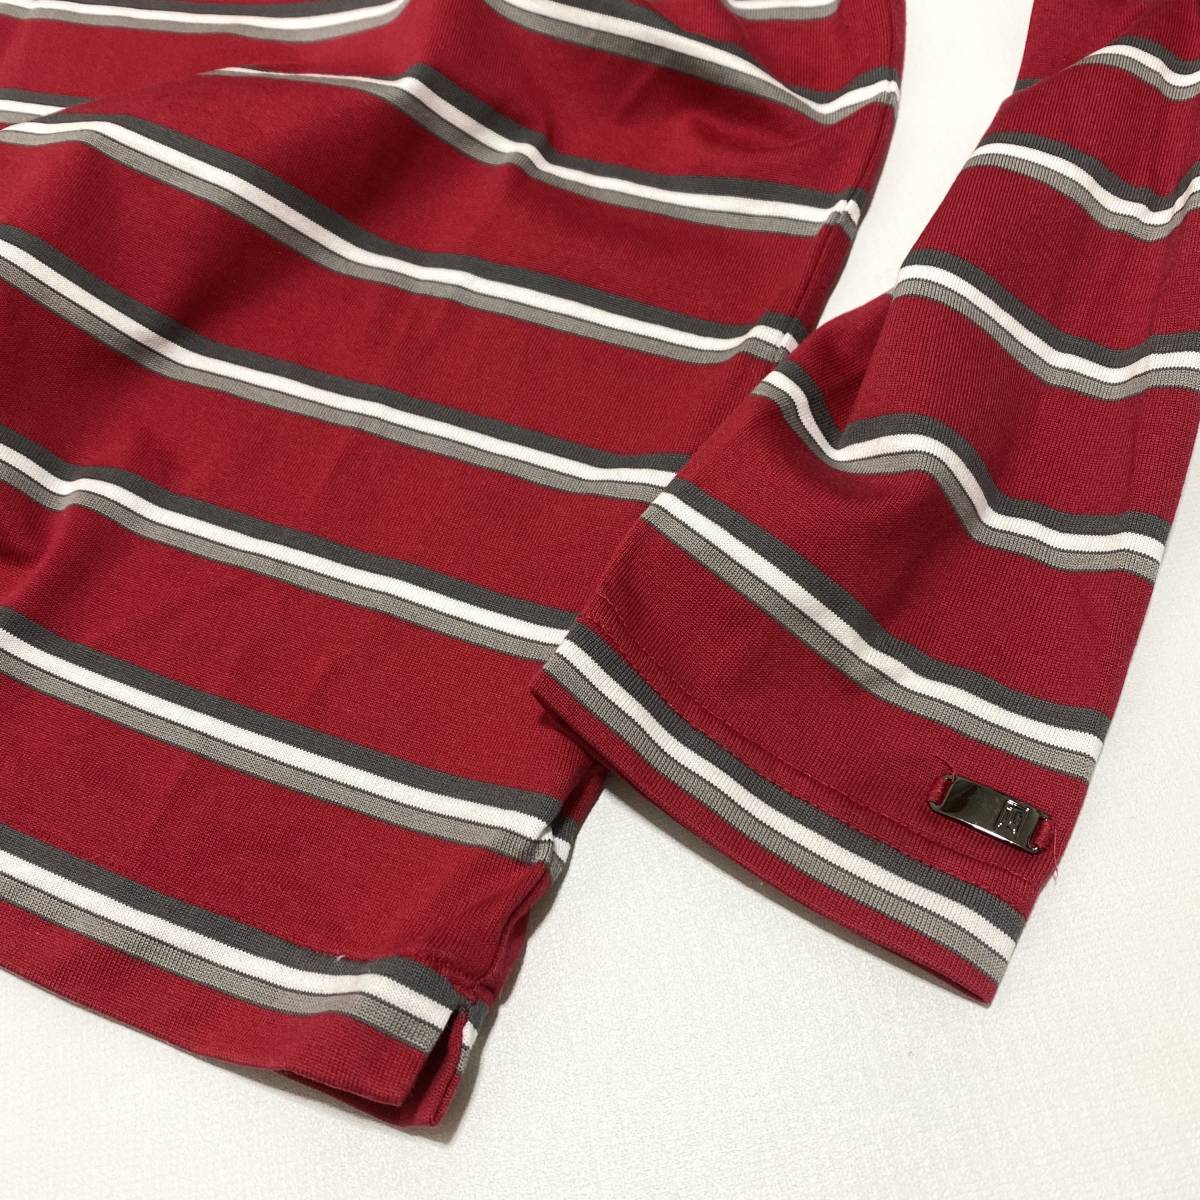 NIKE TIGER WOODS COLLECTION Nike Tiger Woods коллекция длинный рукав окантовка рубашка-поло XL красный мужской Golf одежда 23-1115